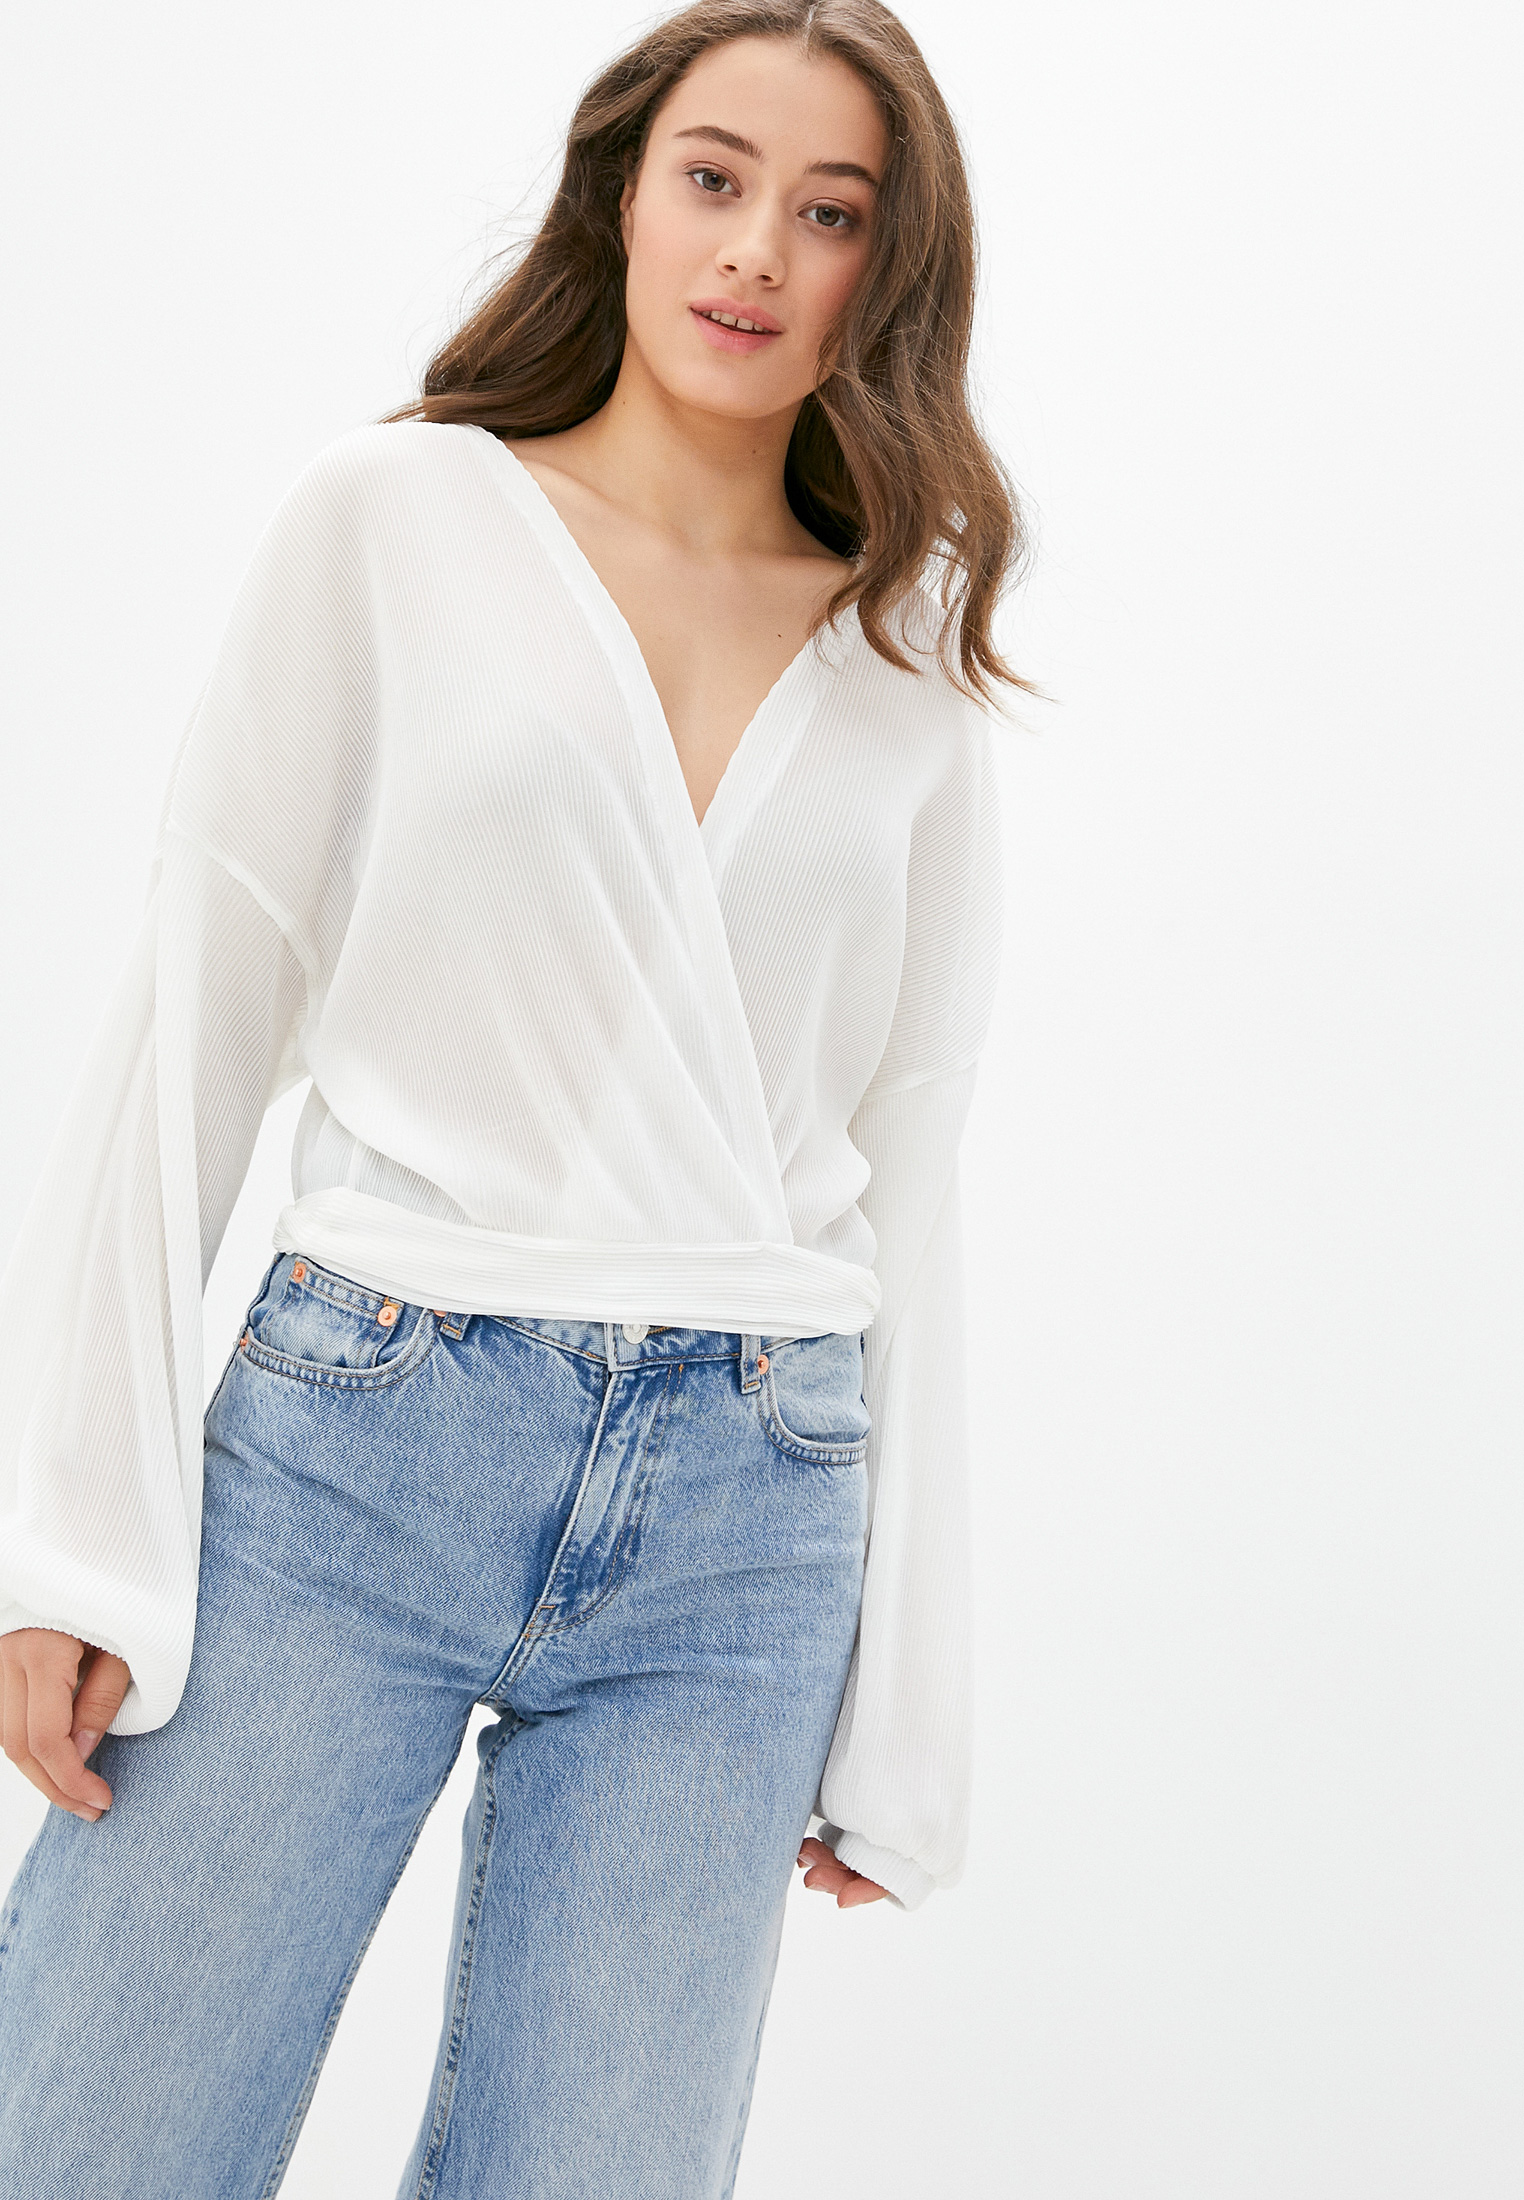 Классика дресс-кода: 12 идеальных белых блузок на осень